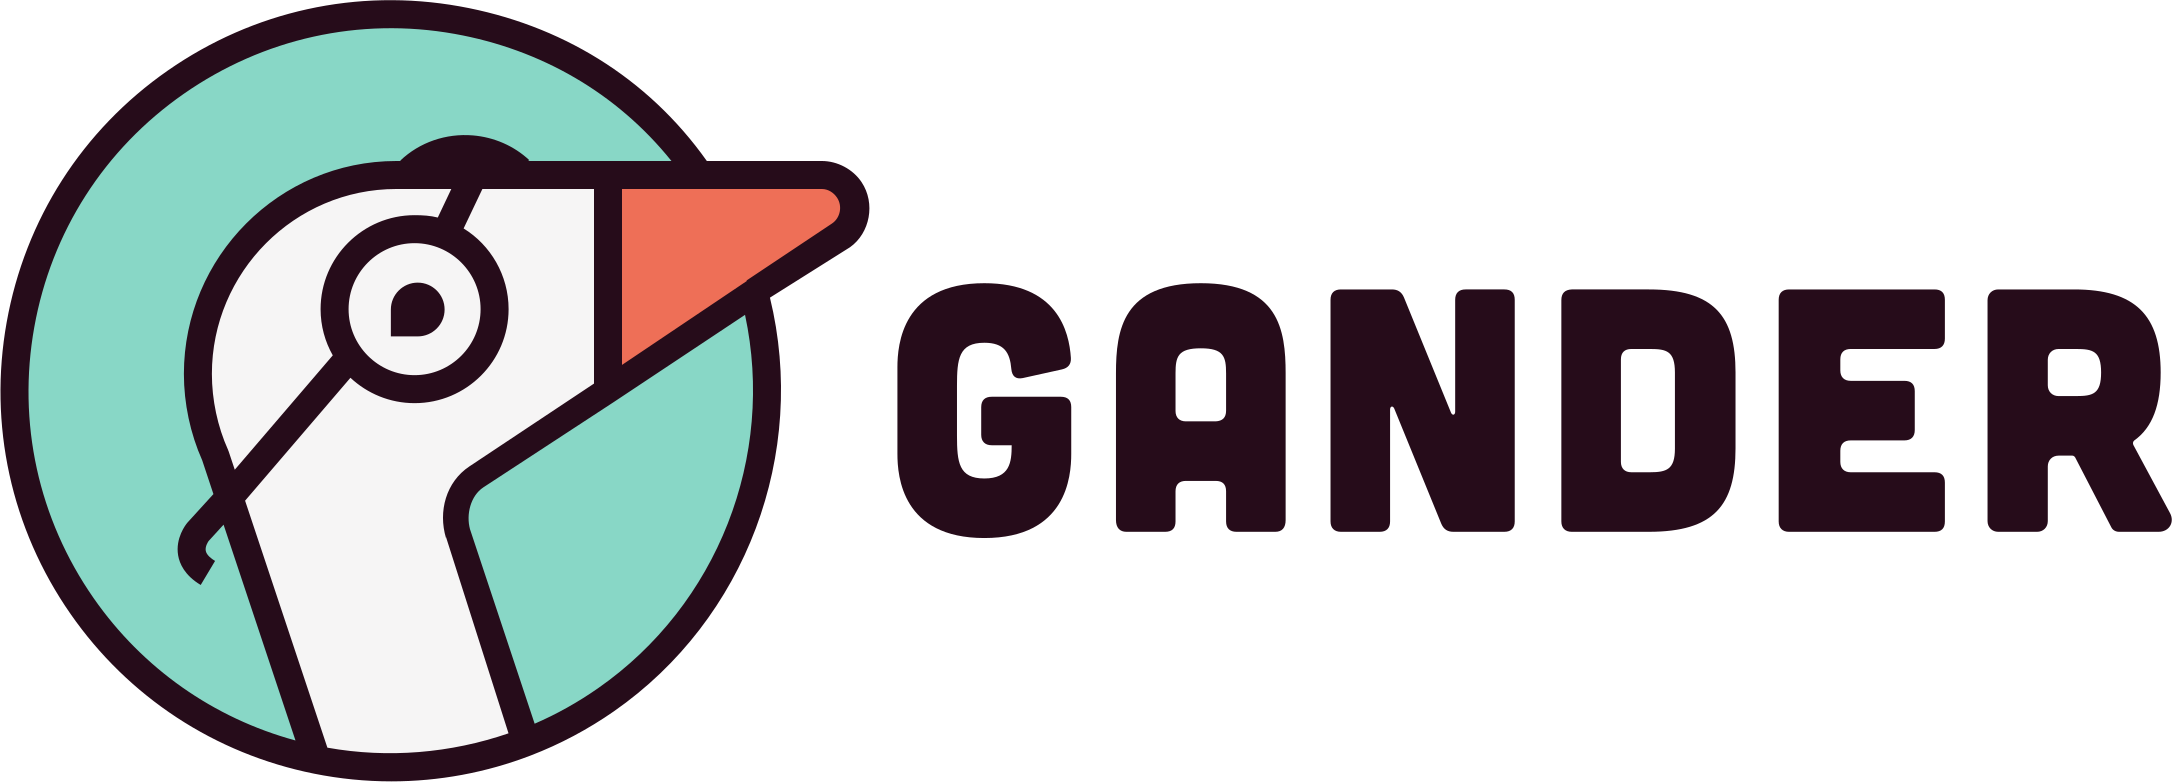 Gander logo